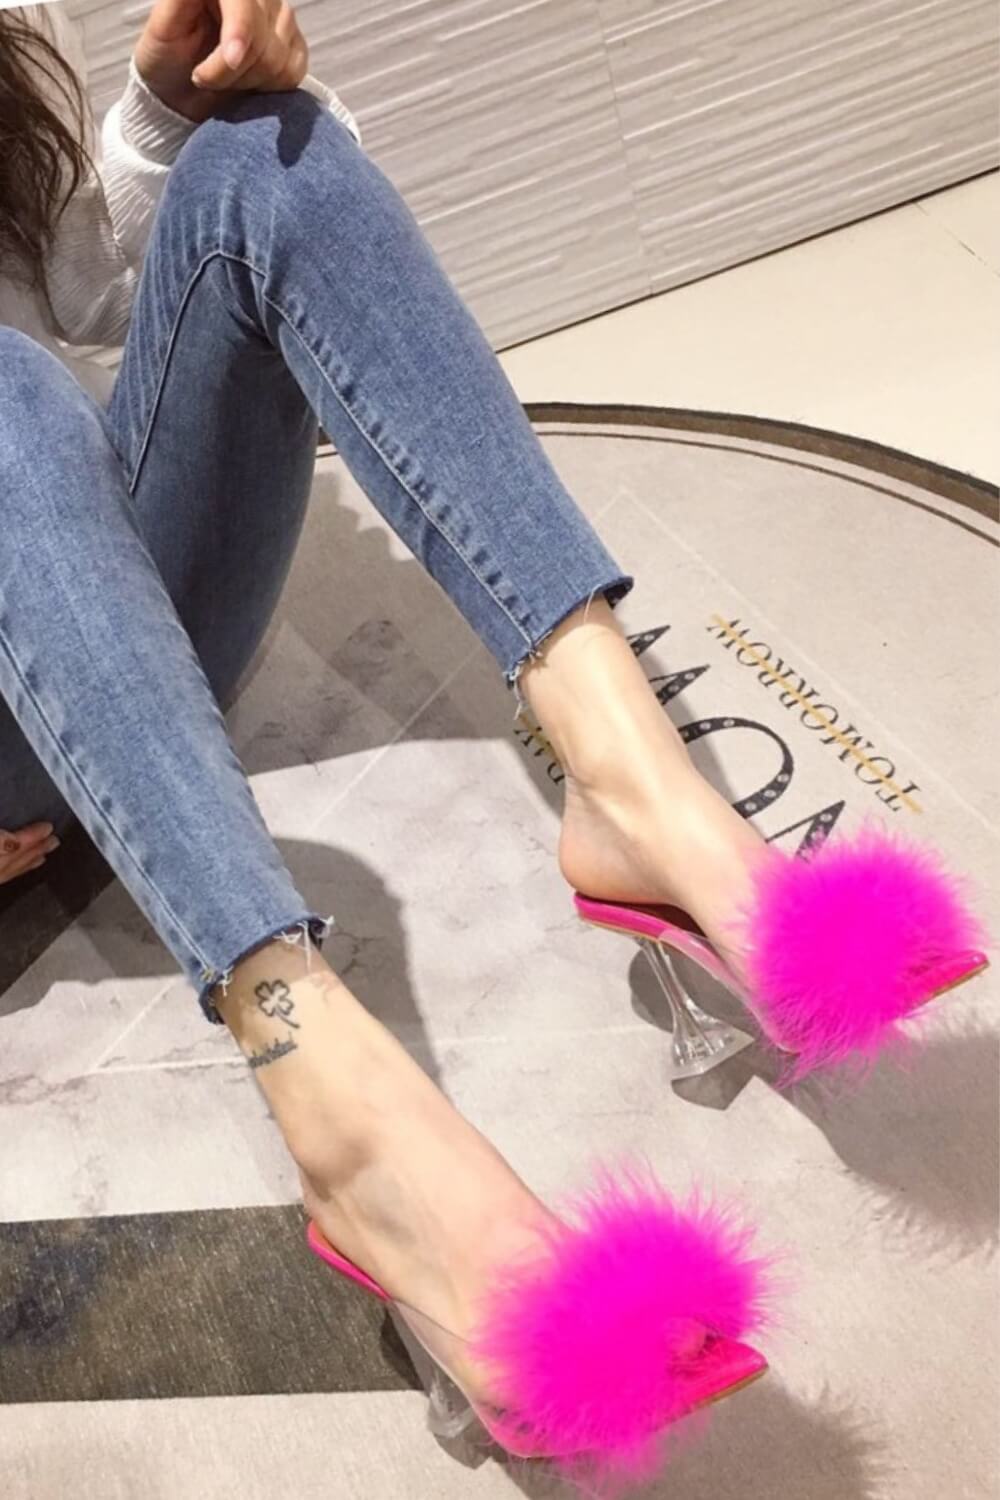 Clear Stiletto High Heel Pink Fur Sandals - TGC Boutique - Pink Heels